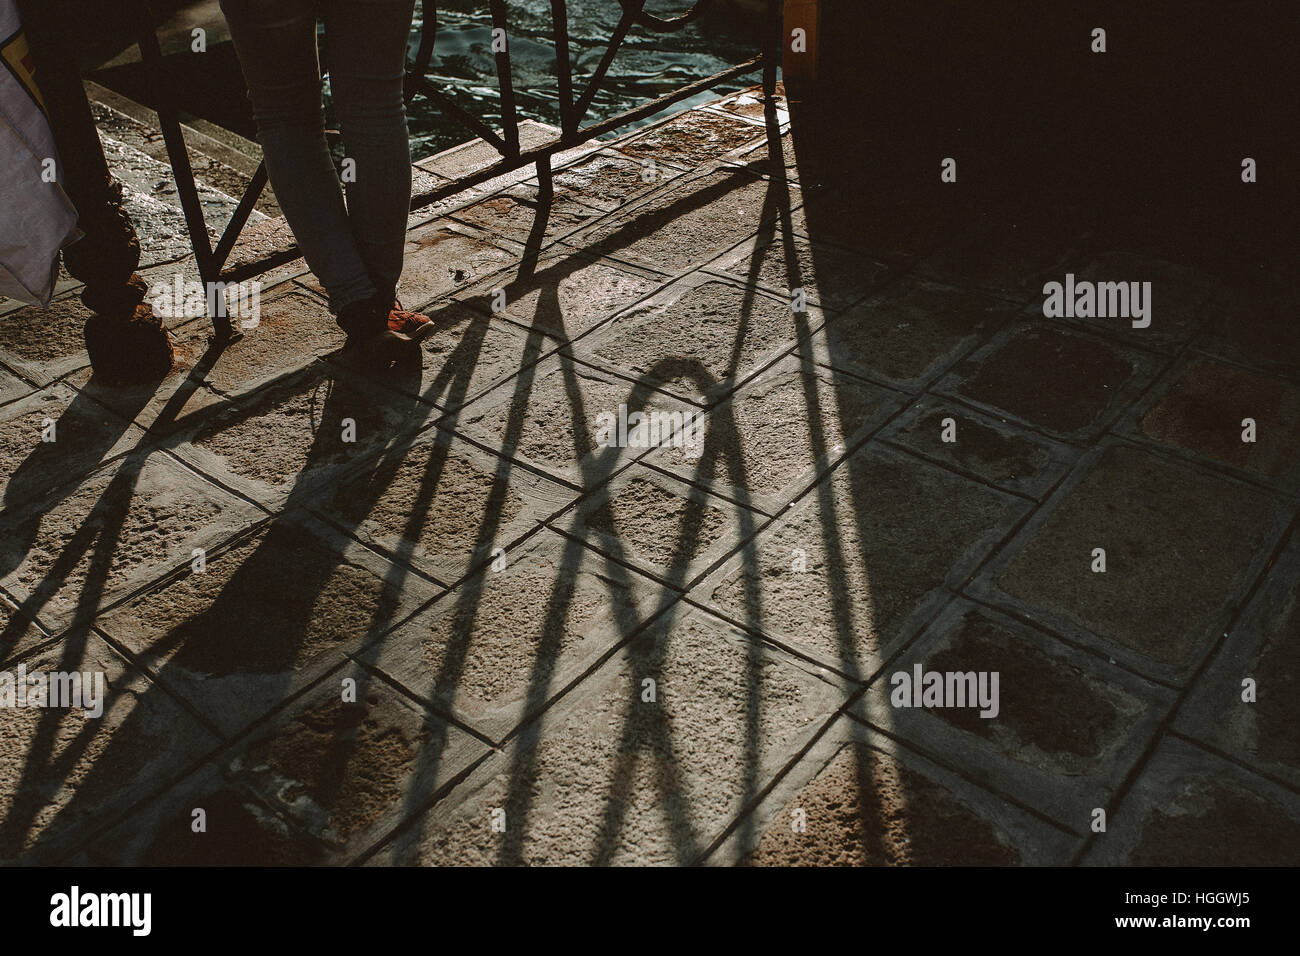 Une personne est leanin sur une balustrade. Le coucher du soleil crée une ombre sur le sol. La scène est tournée à Venise, Italie. Banque D'Images